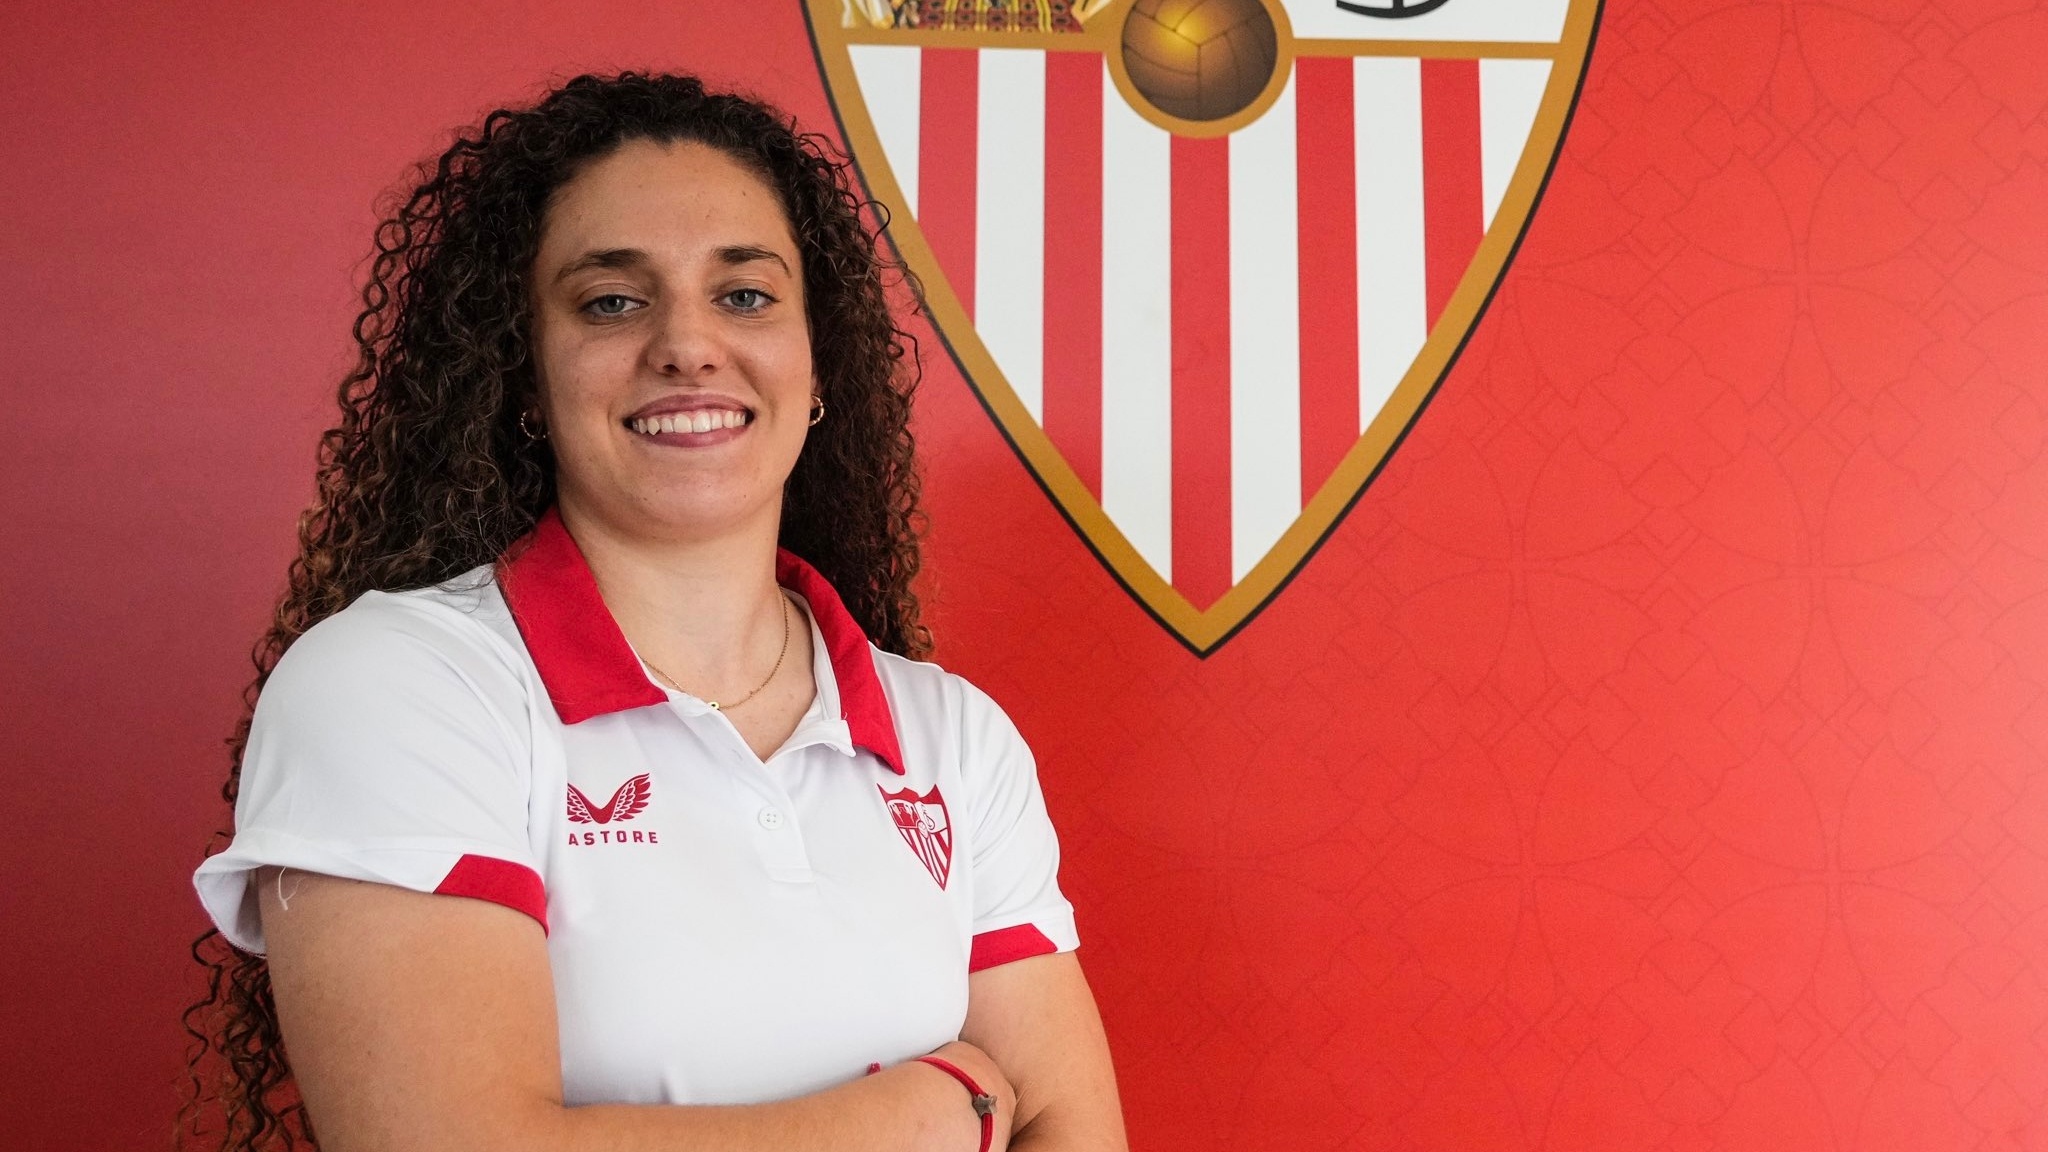 OFICIAL: Paula Partido jugará cedida en el Sevilla hasta final de temporada